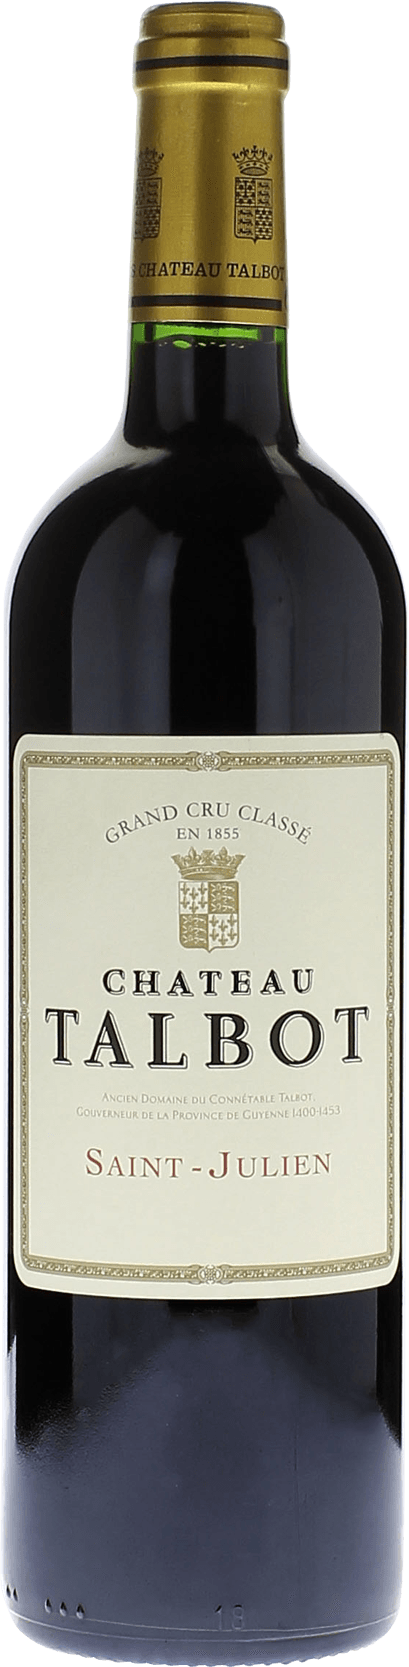 Talbot 1987 4me Grand cru class Saint-Julien, Bordeaux rouge